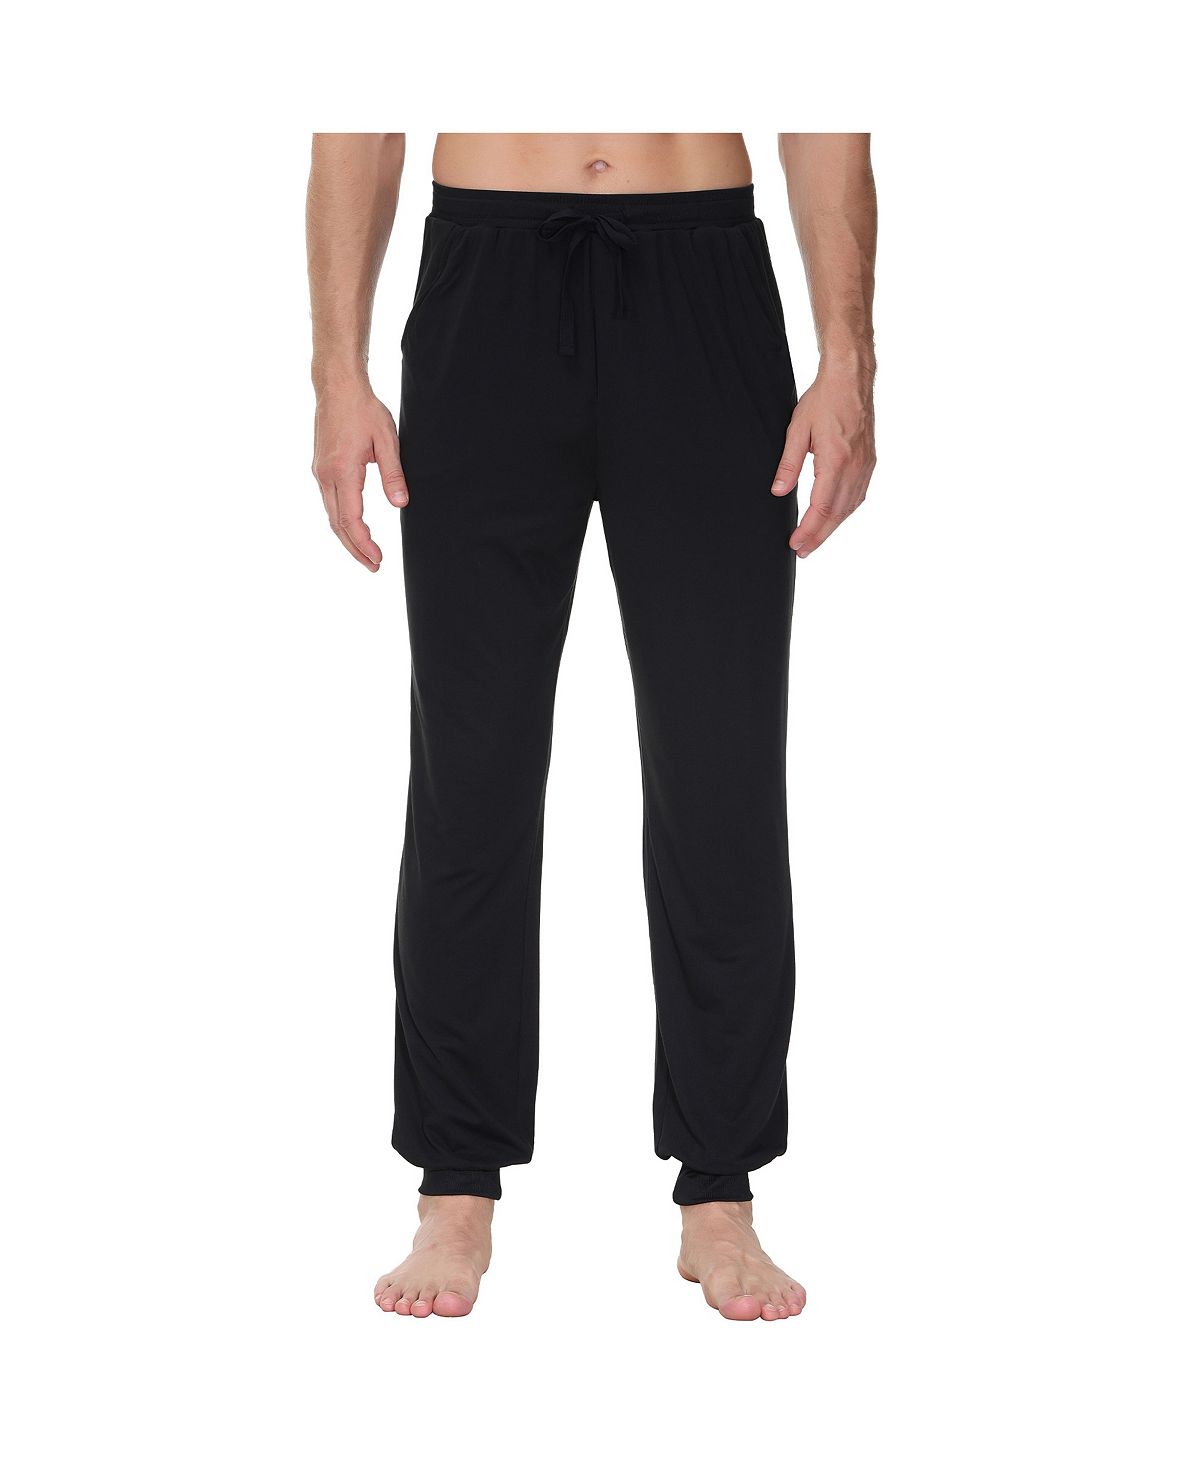 Мужские пижамные штаны с контрастной отделкой и сохранением тепла INK+IVY пижамные брюки ivy